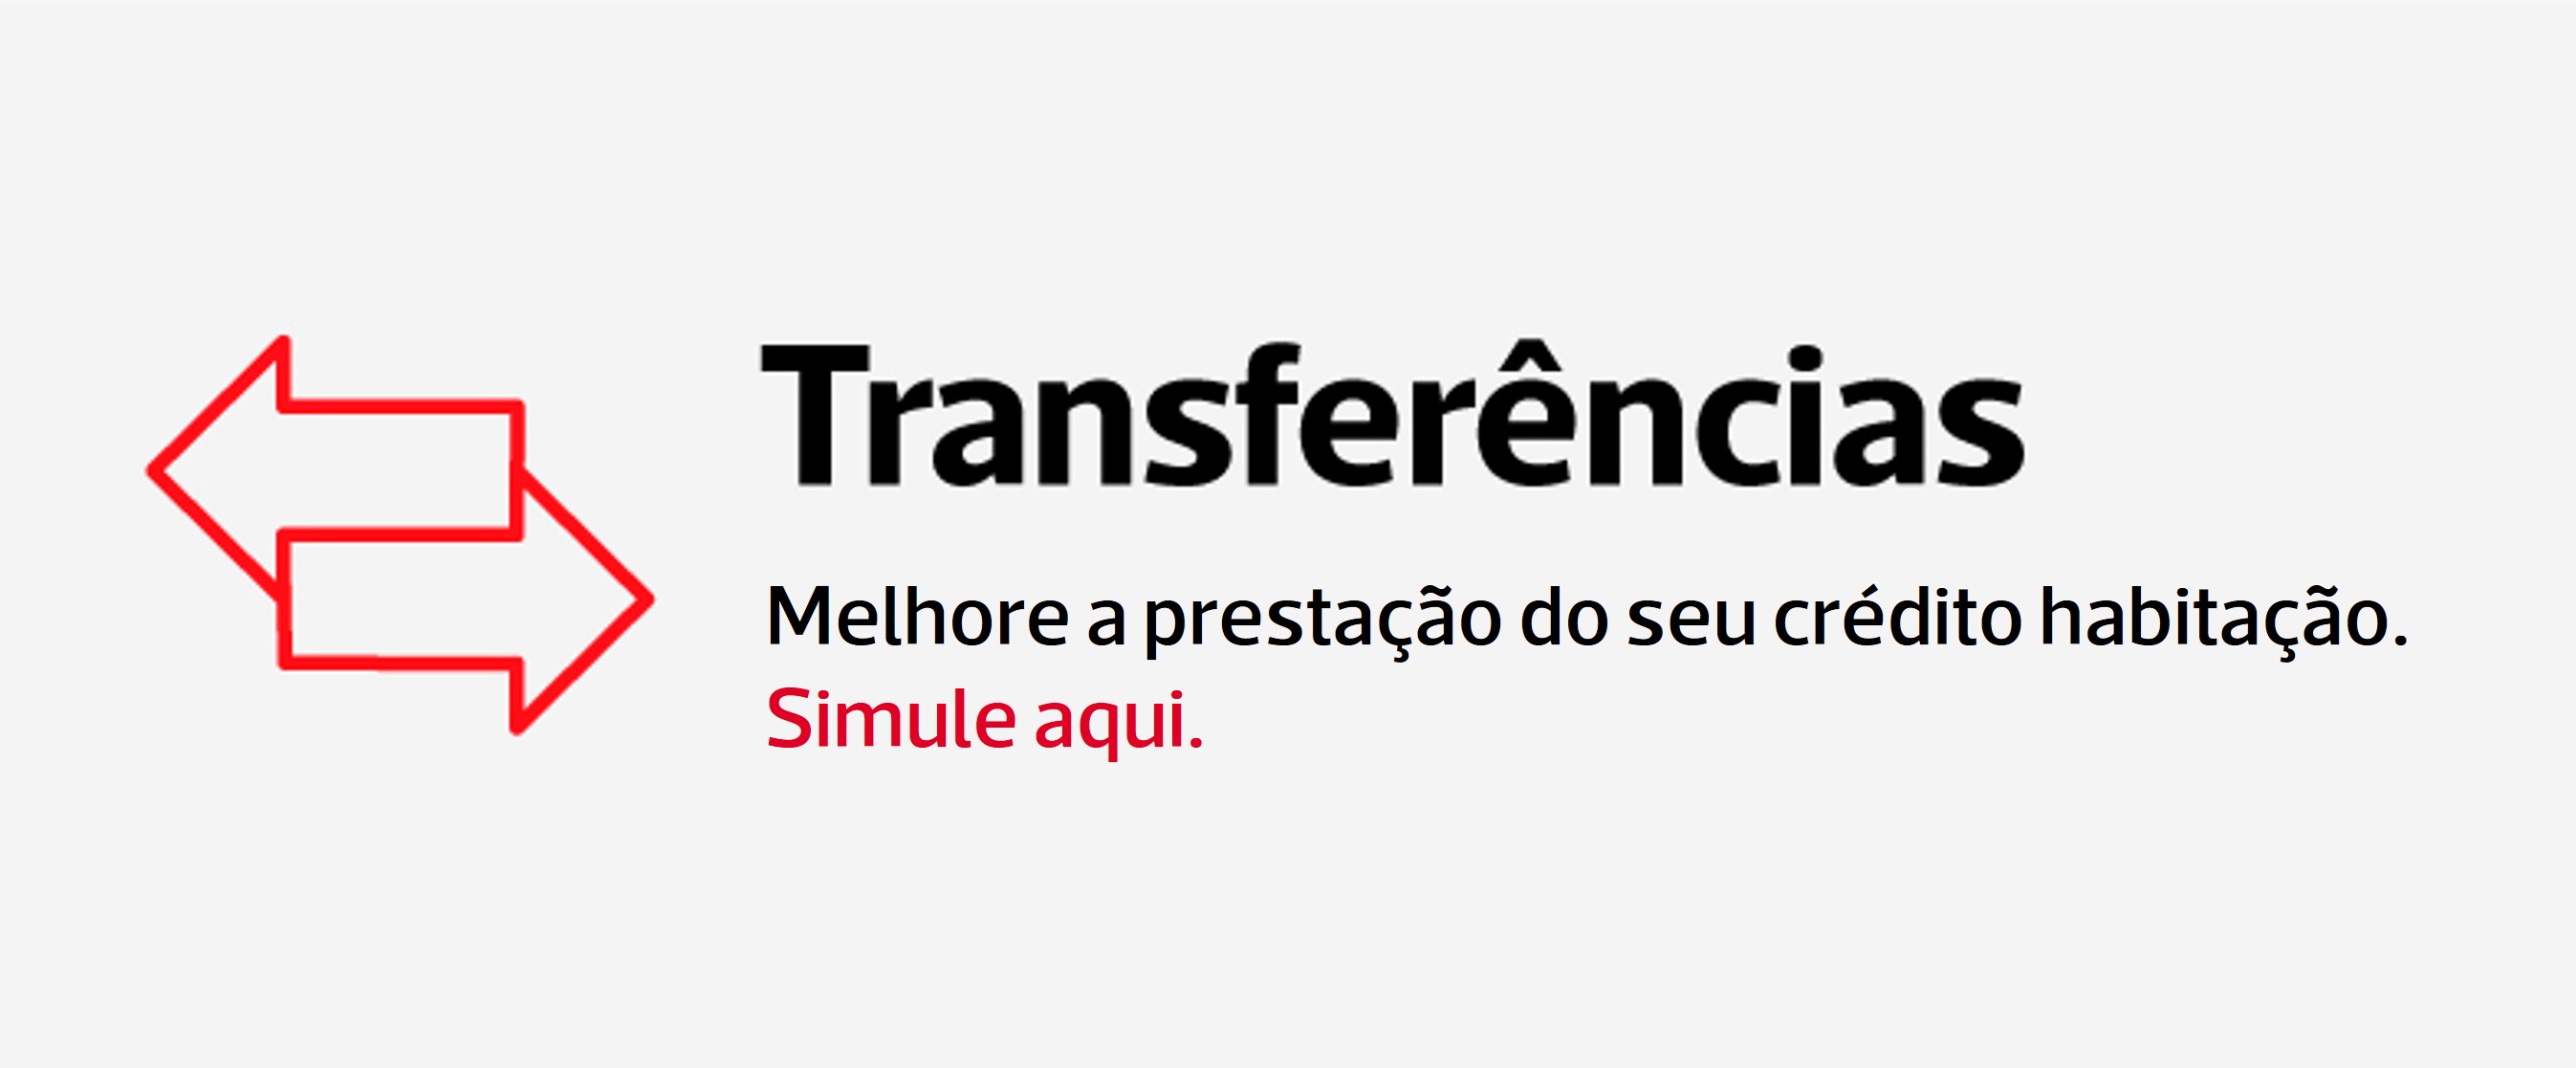 Header_Transferencias_campanha